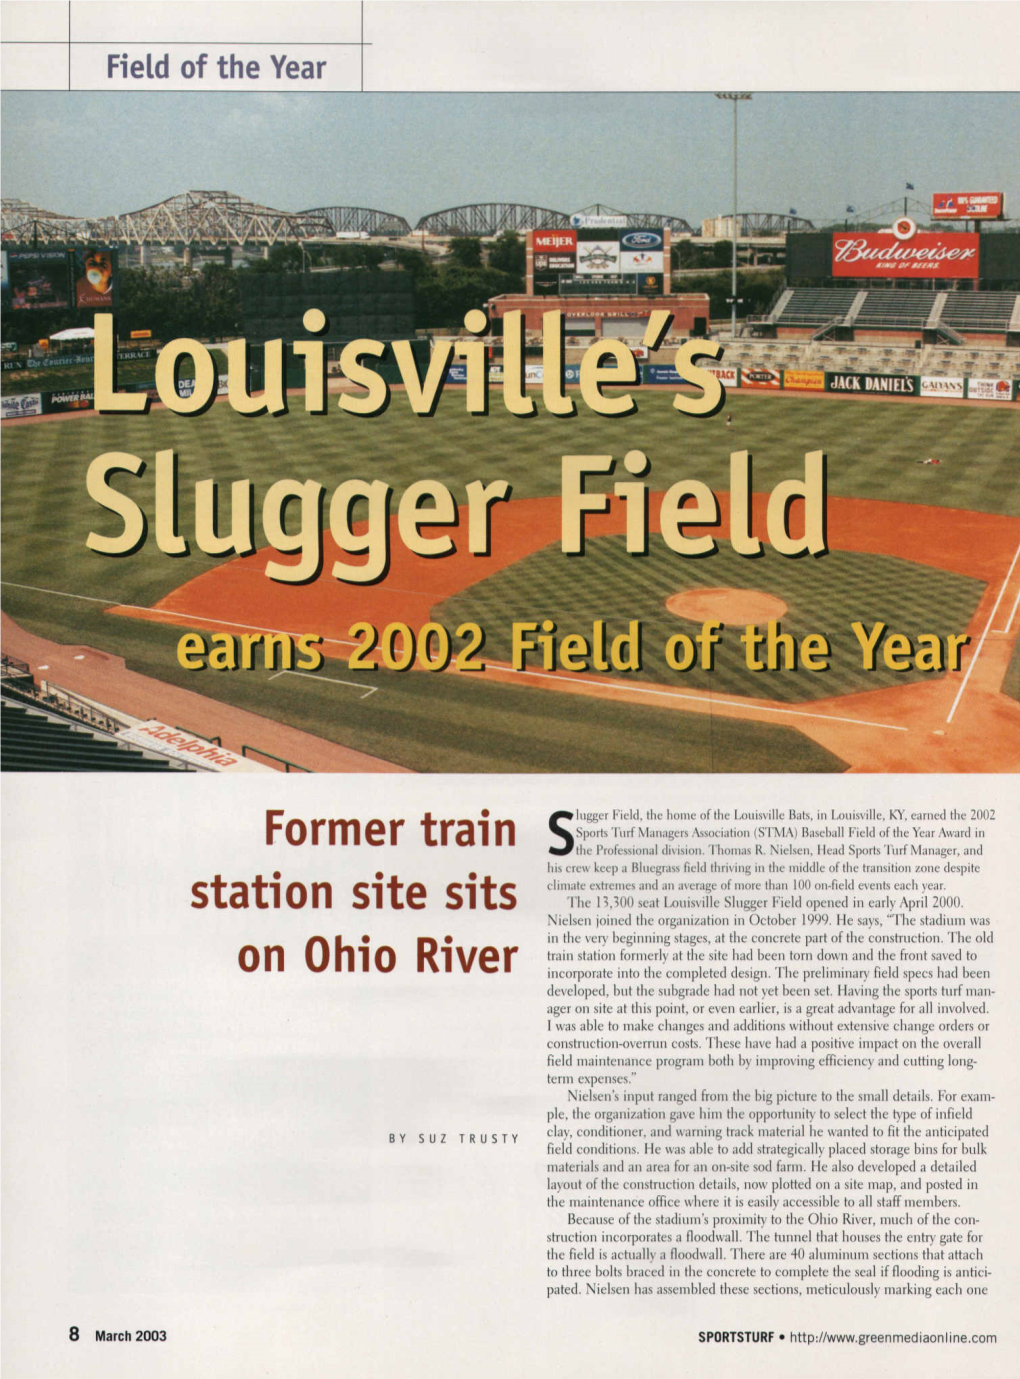 Louisville Slugger Field Opened in Early April 2000